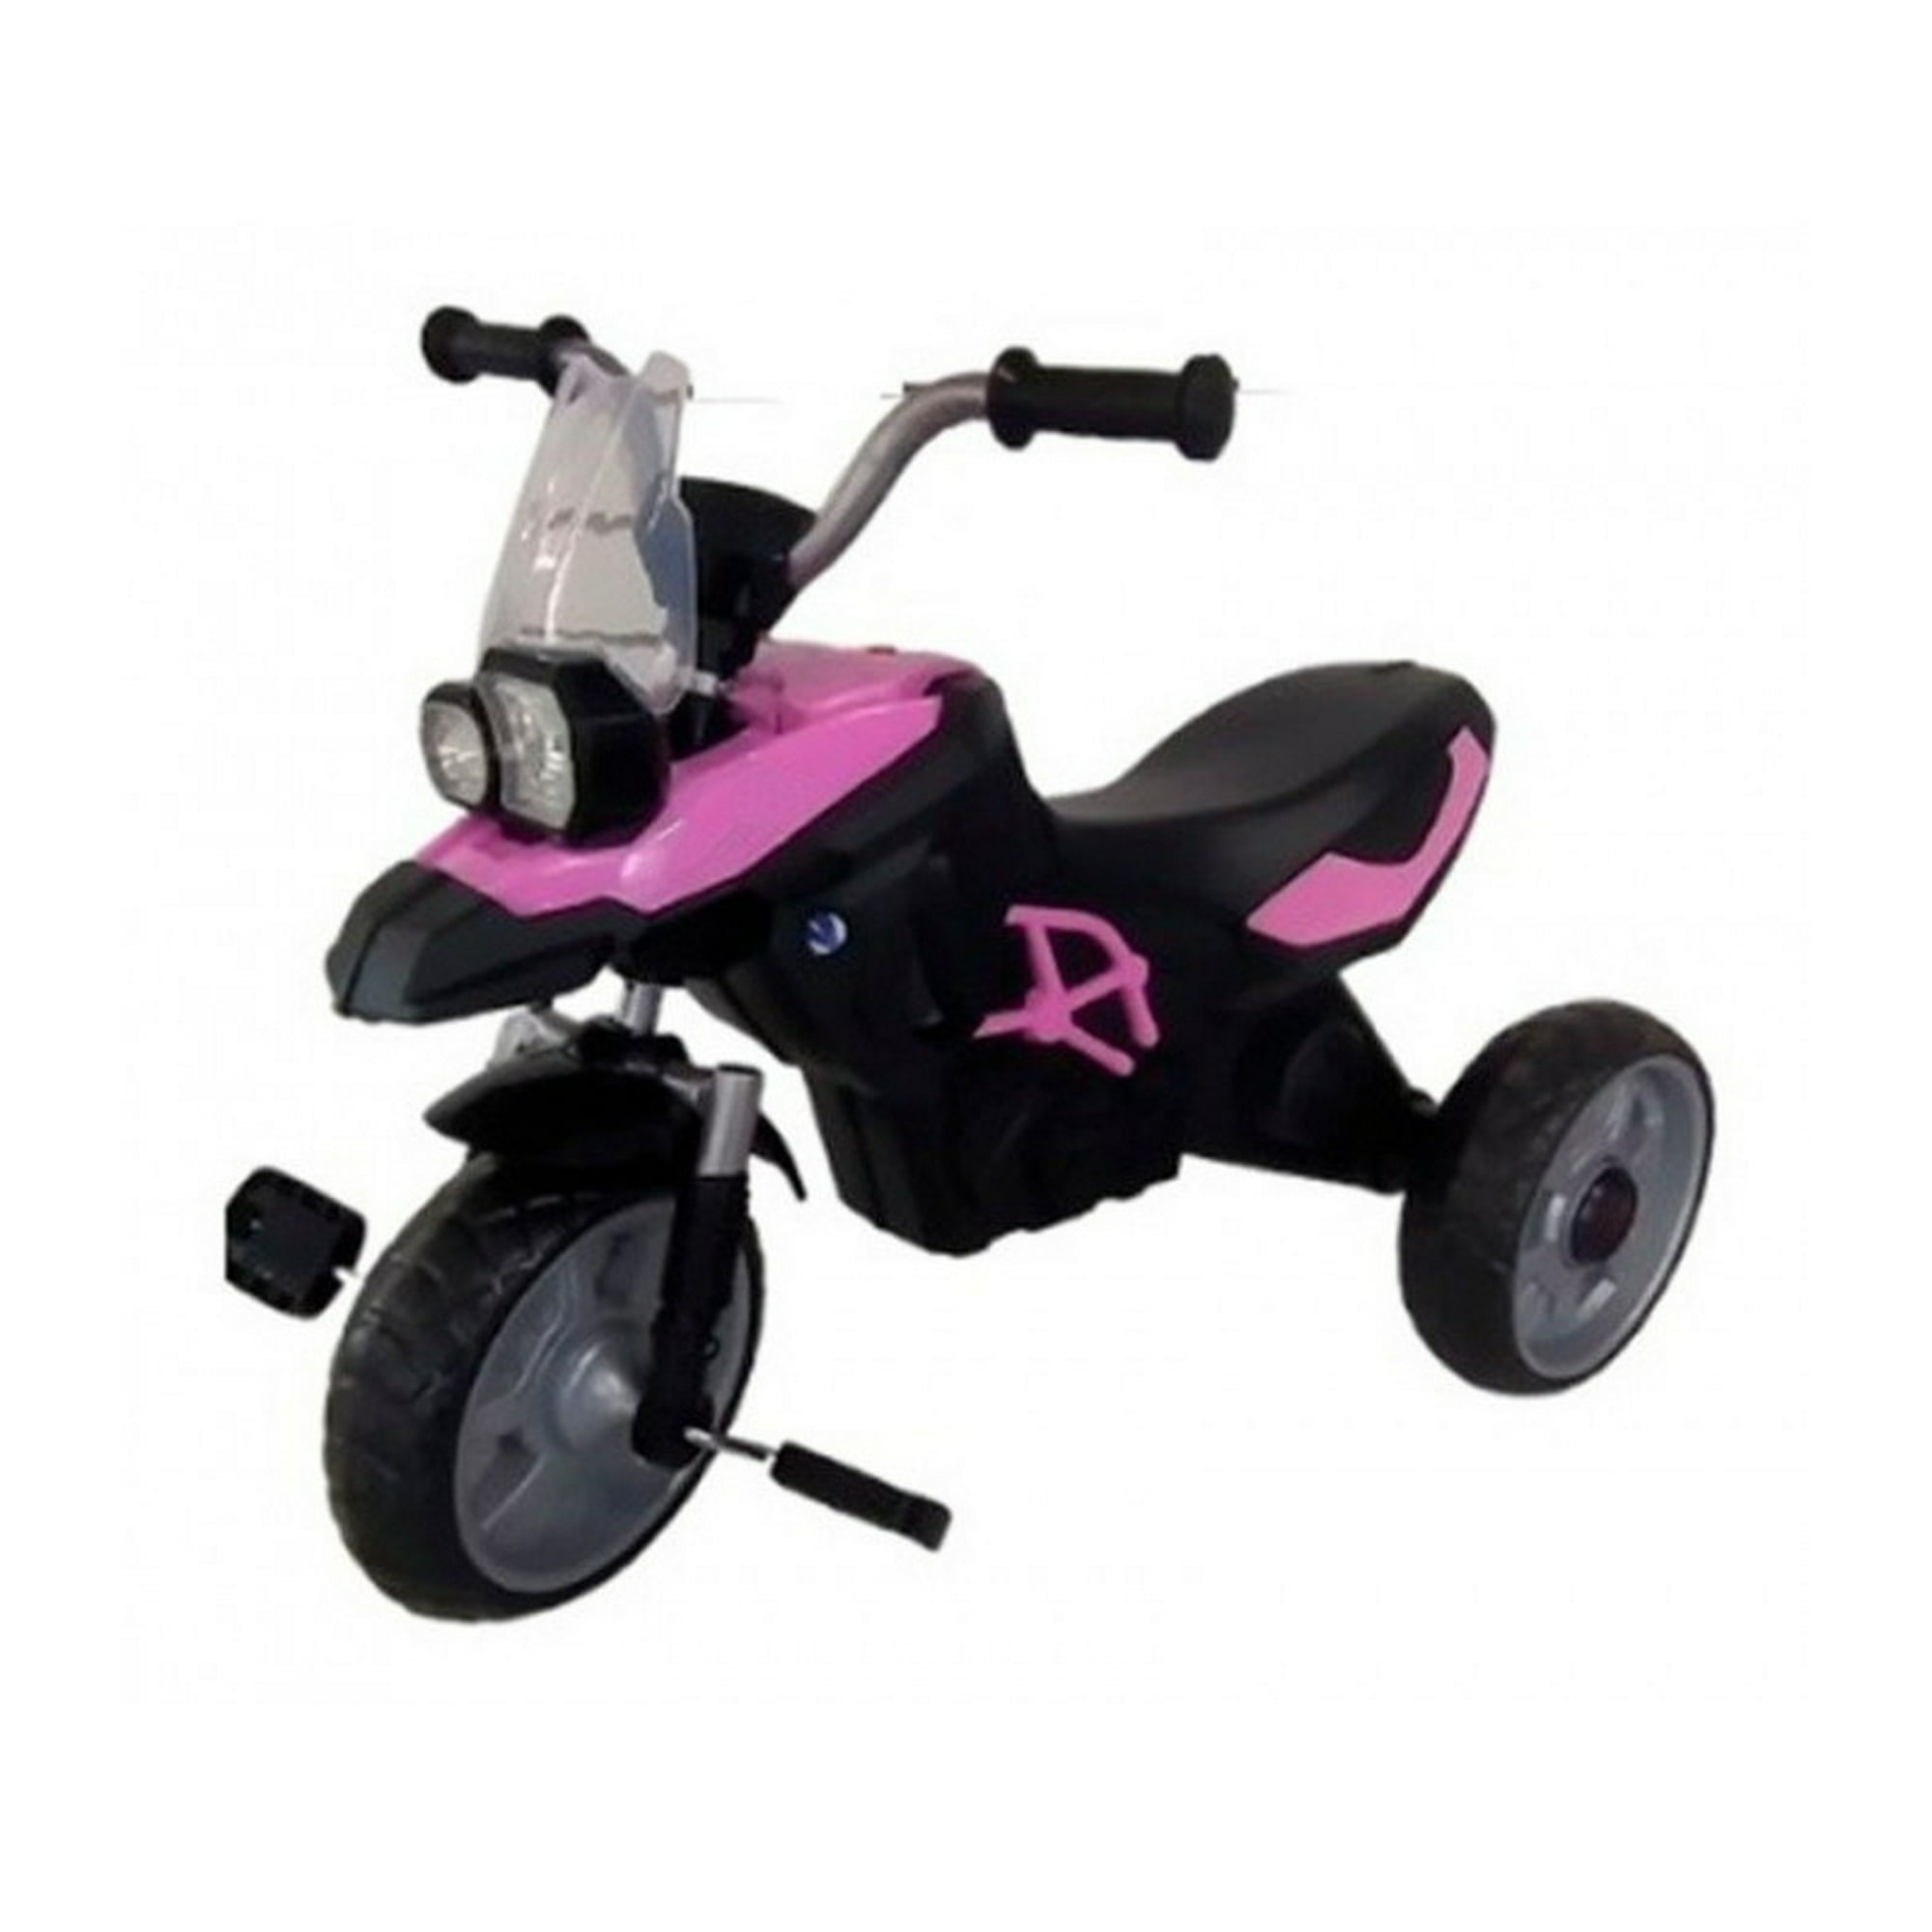 Triciclo Evolutivo Angelin Baby Llanta de Aire Rosa